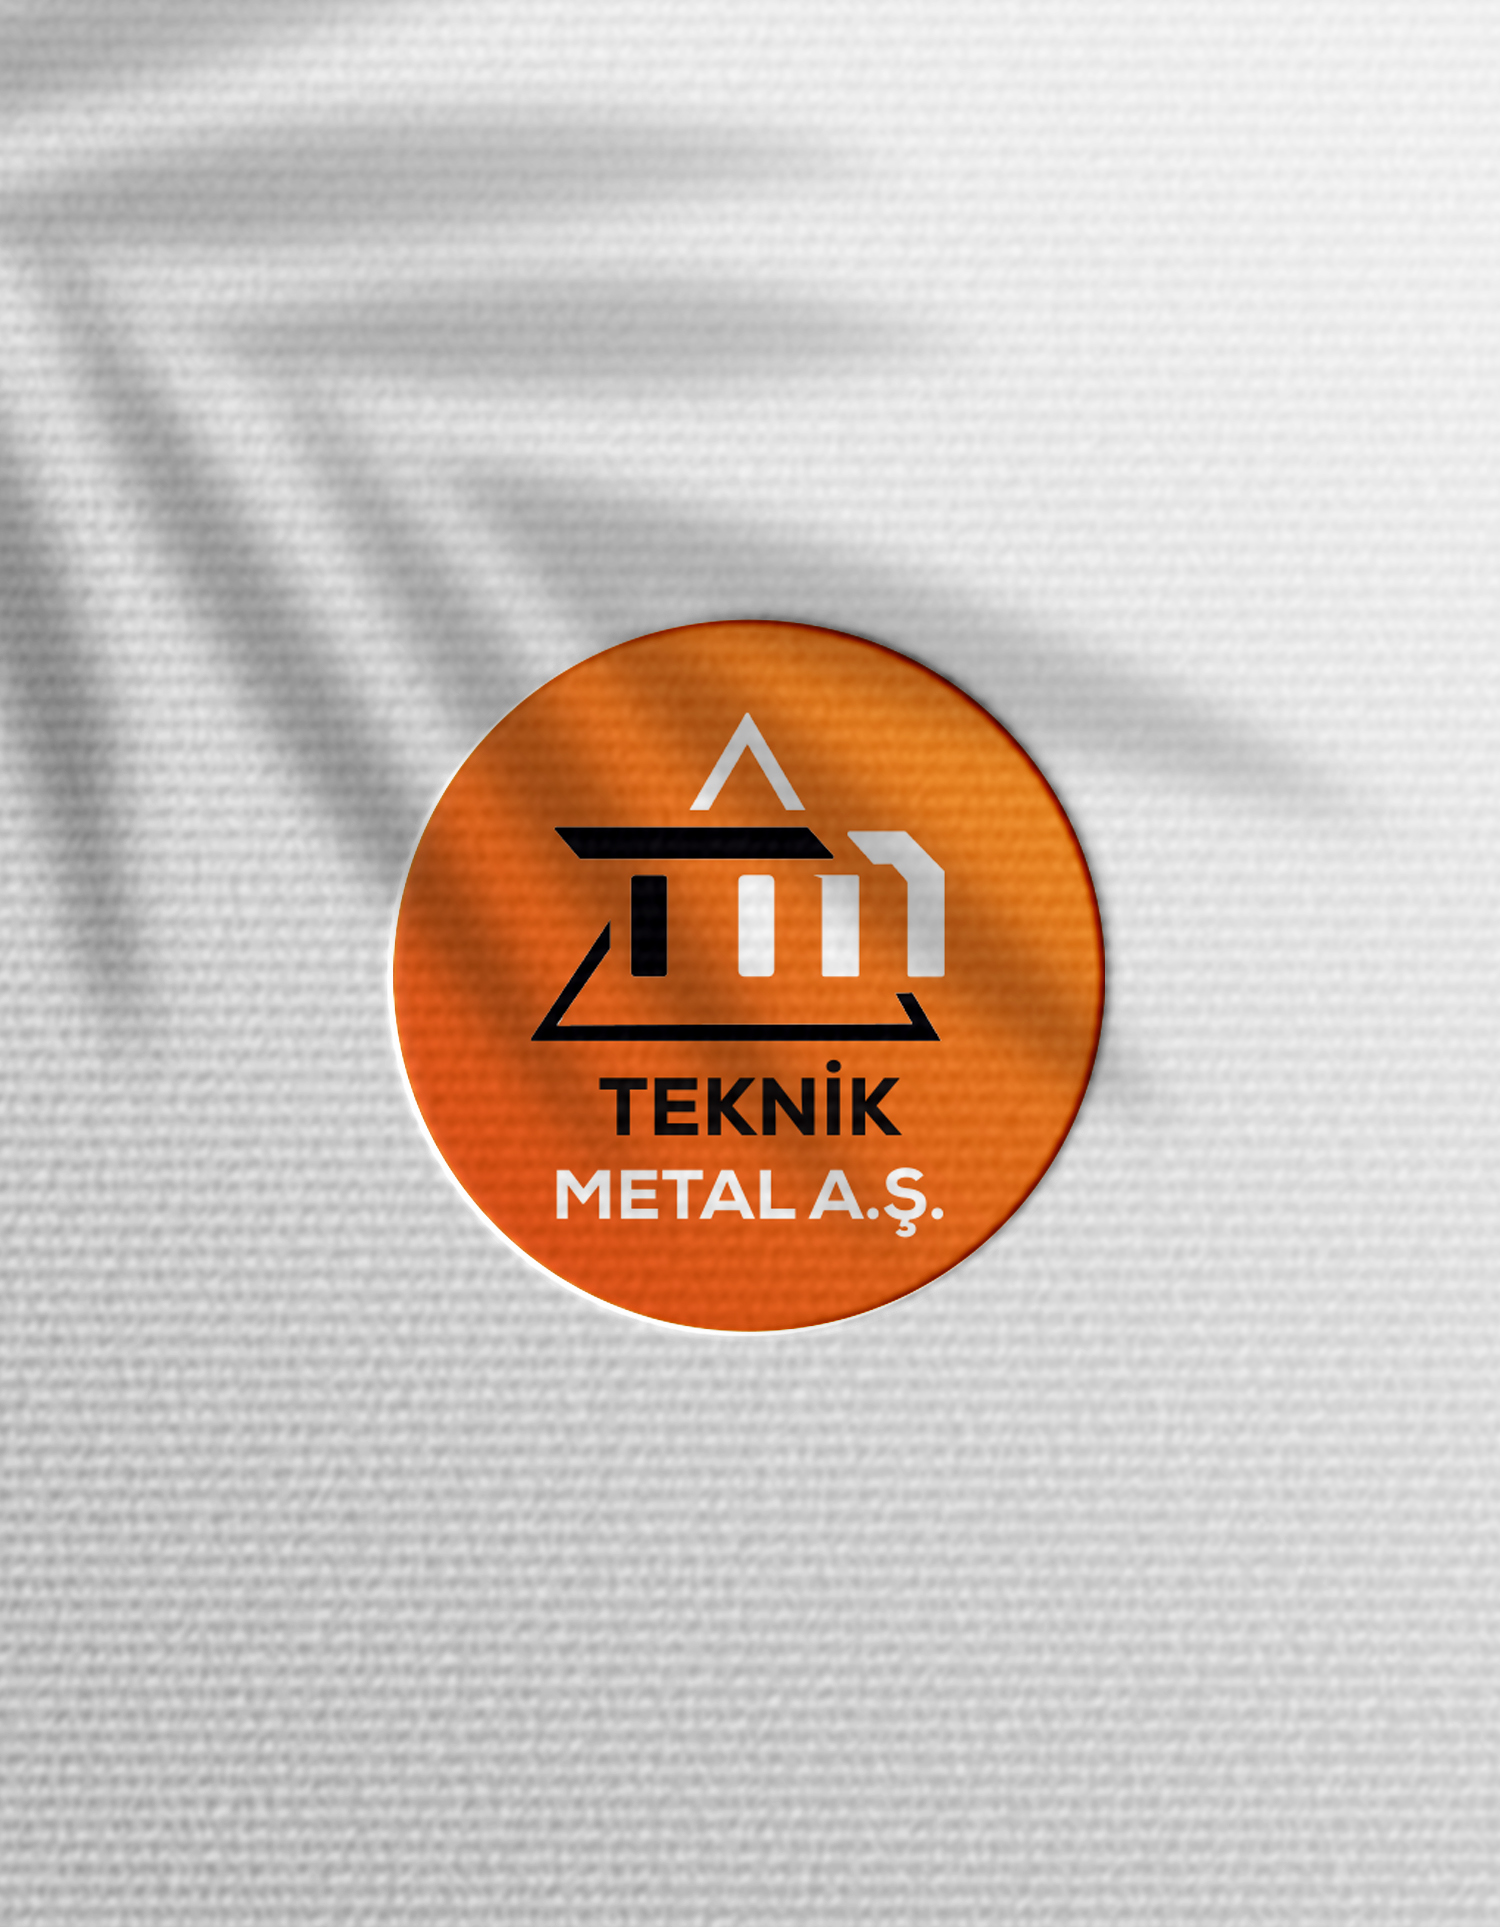 TM Teknik Metal